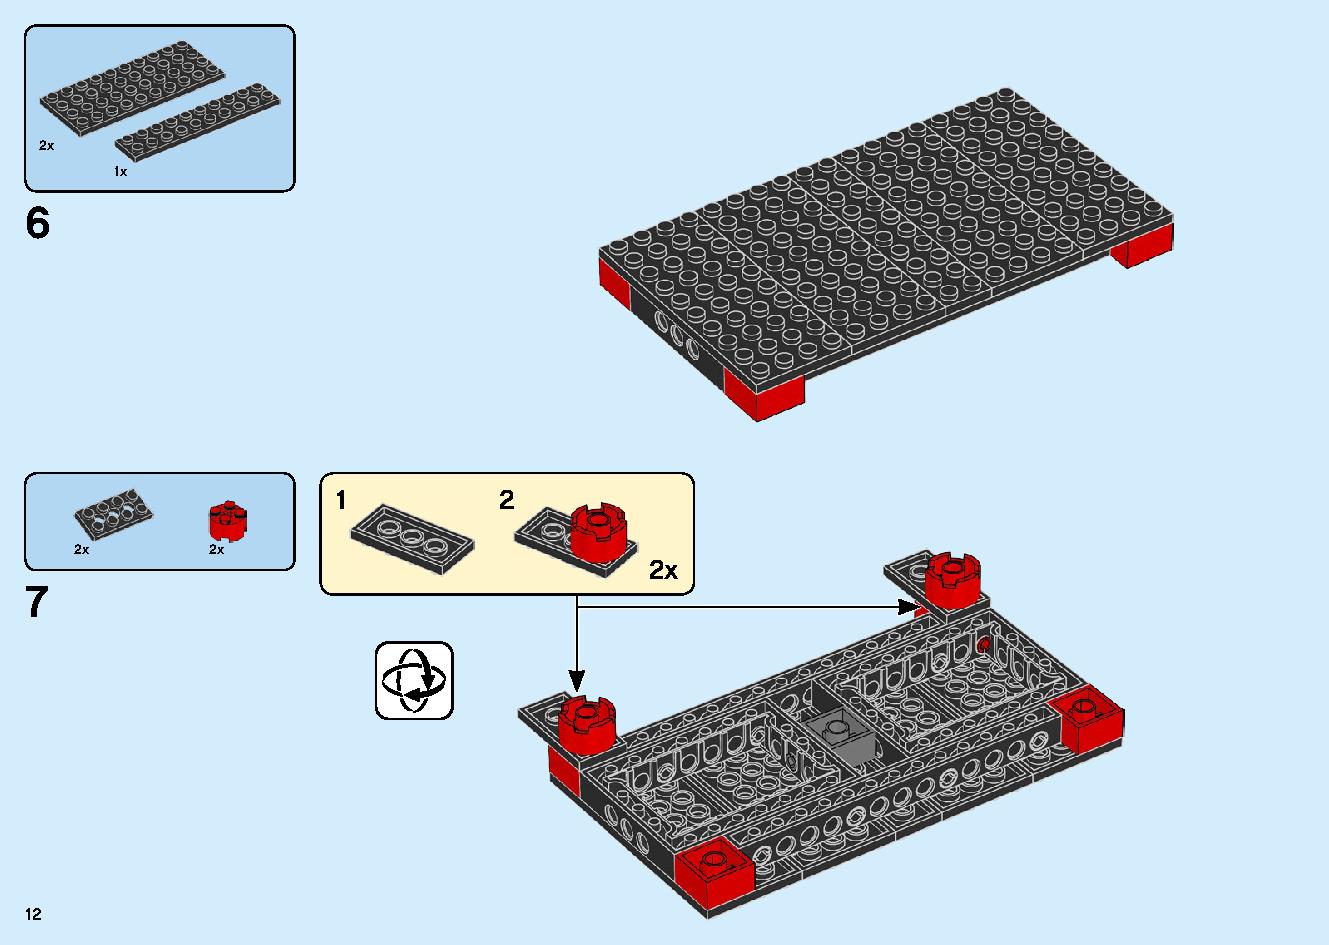 マッドキング神殿 71712 レゴの商品情報 レゴの説明書・組立方法 12 page